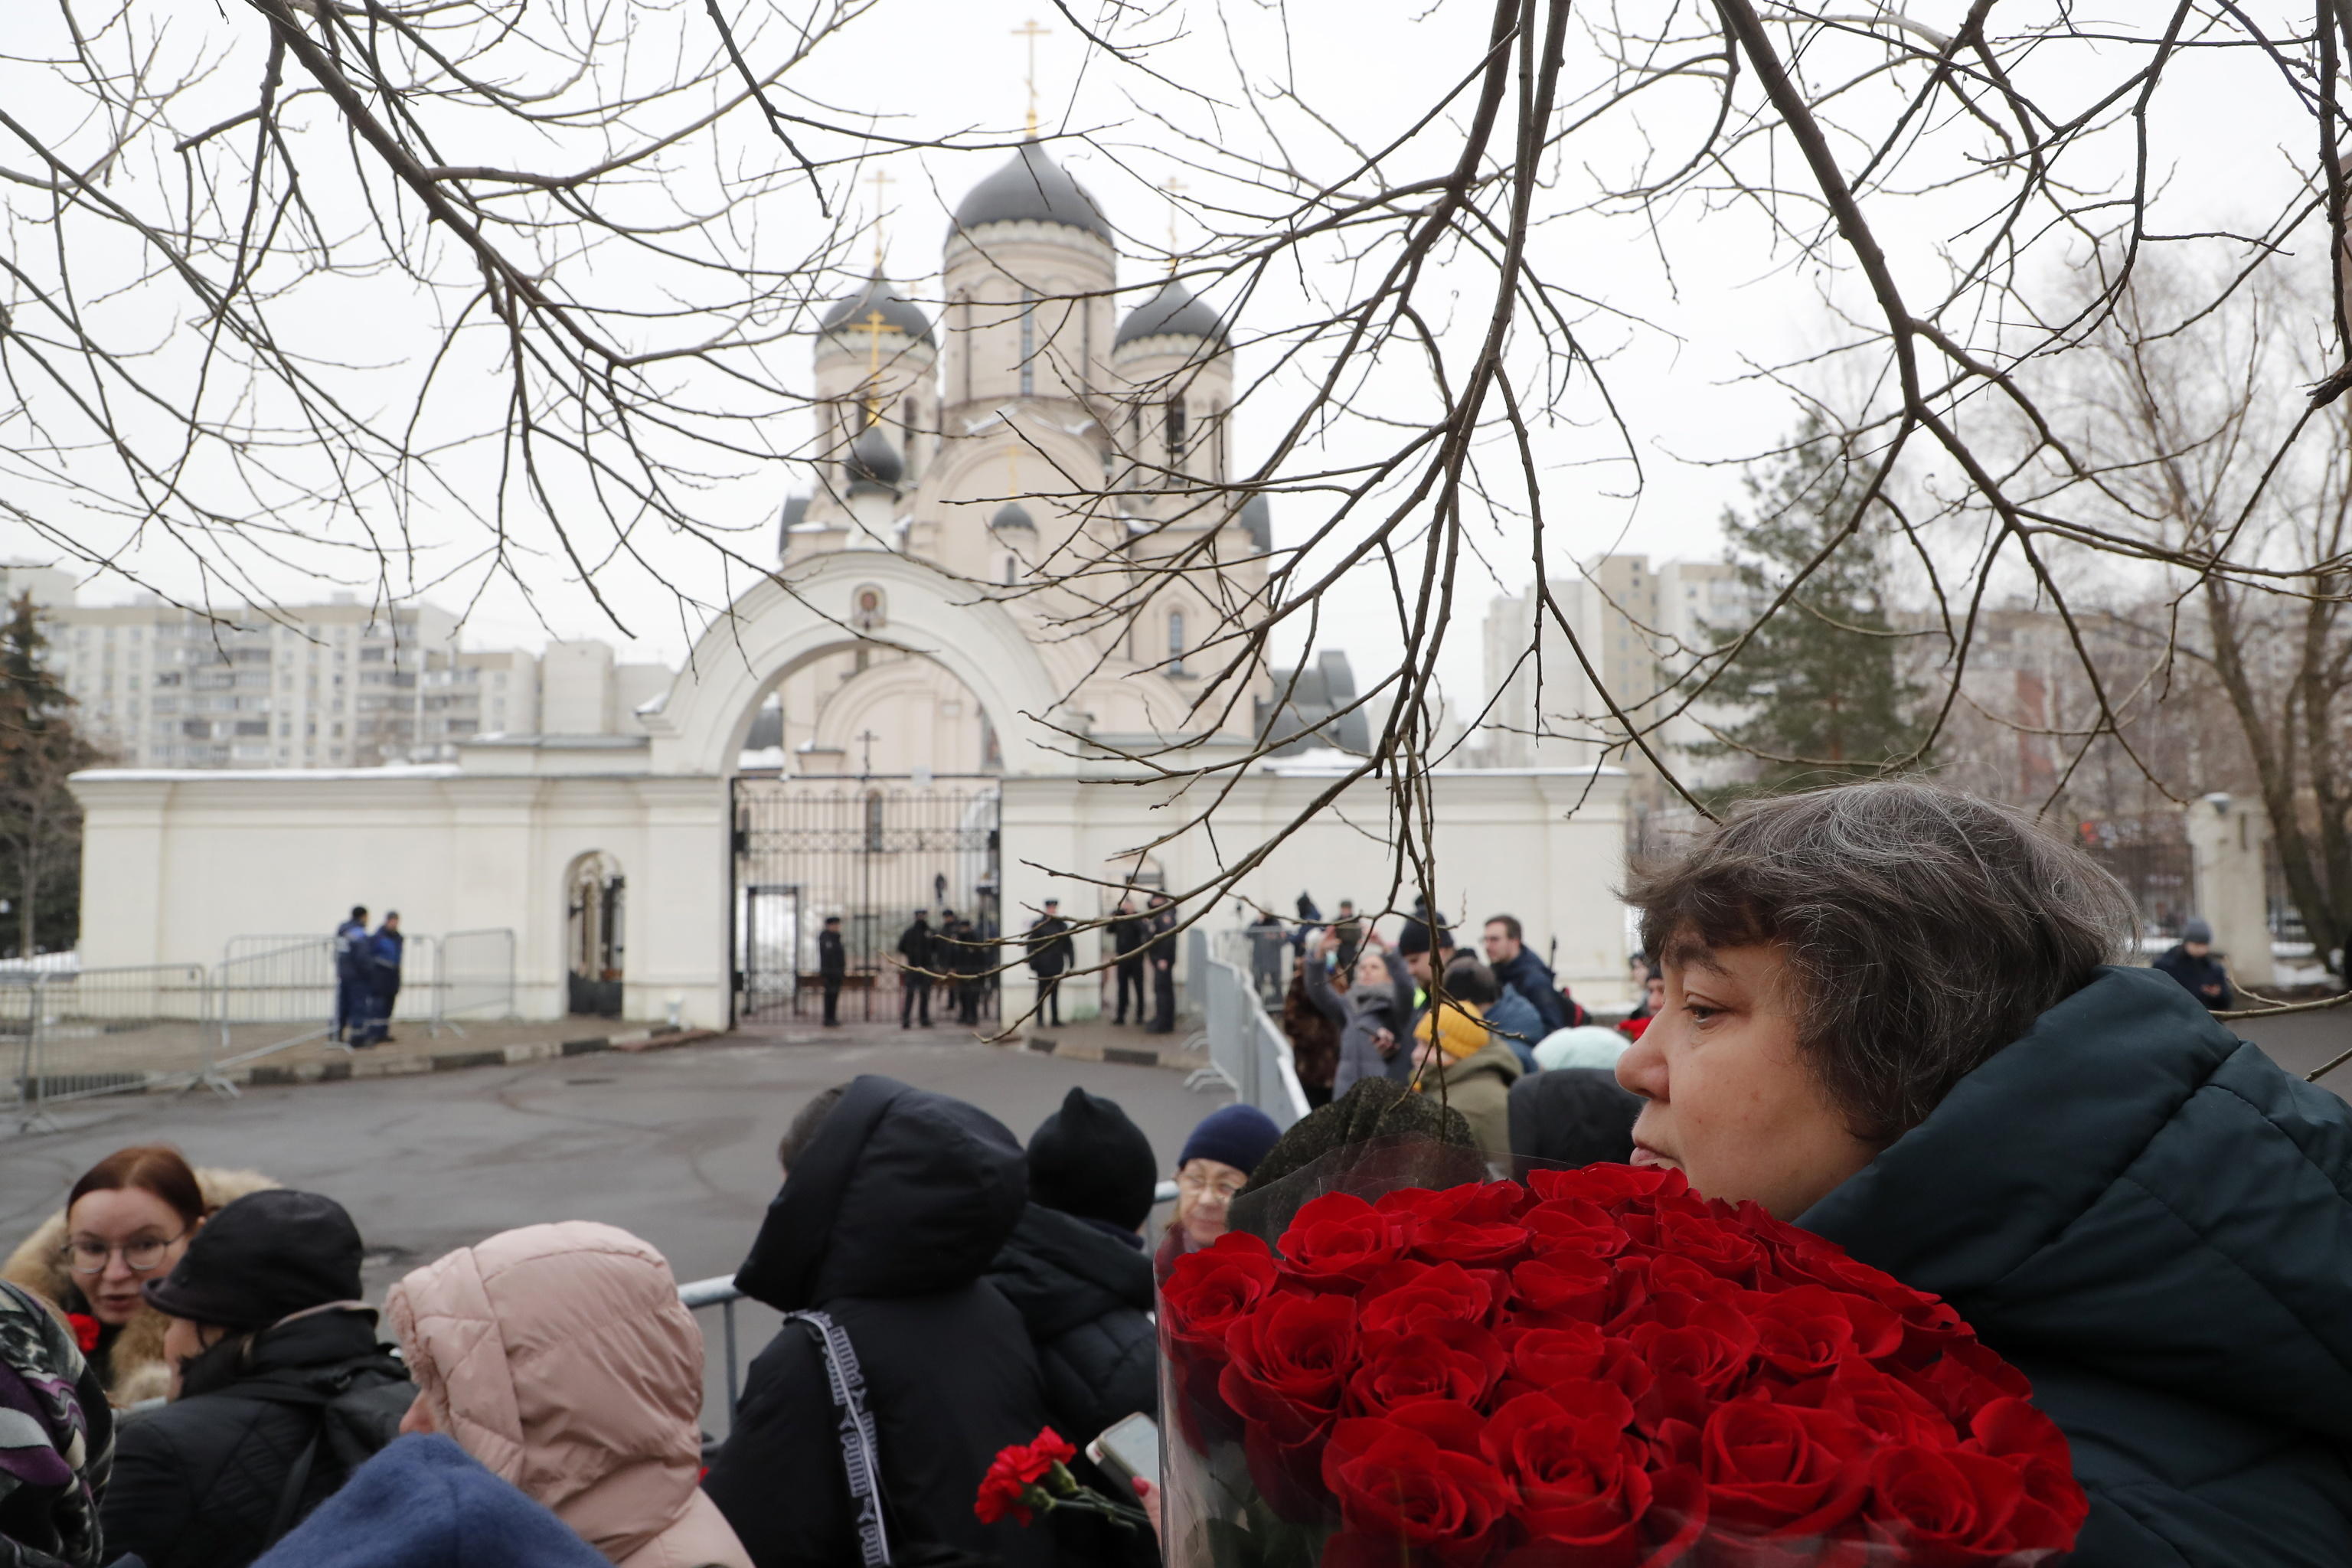 il feretro di navalny arrivato in chiesa, la gente applaude